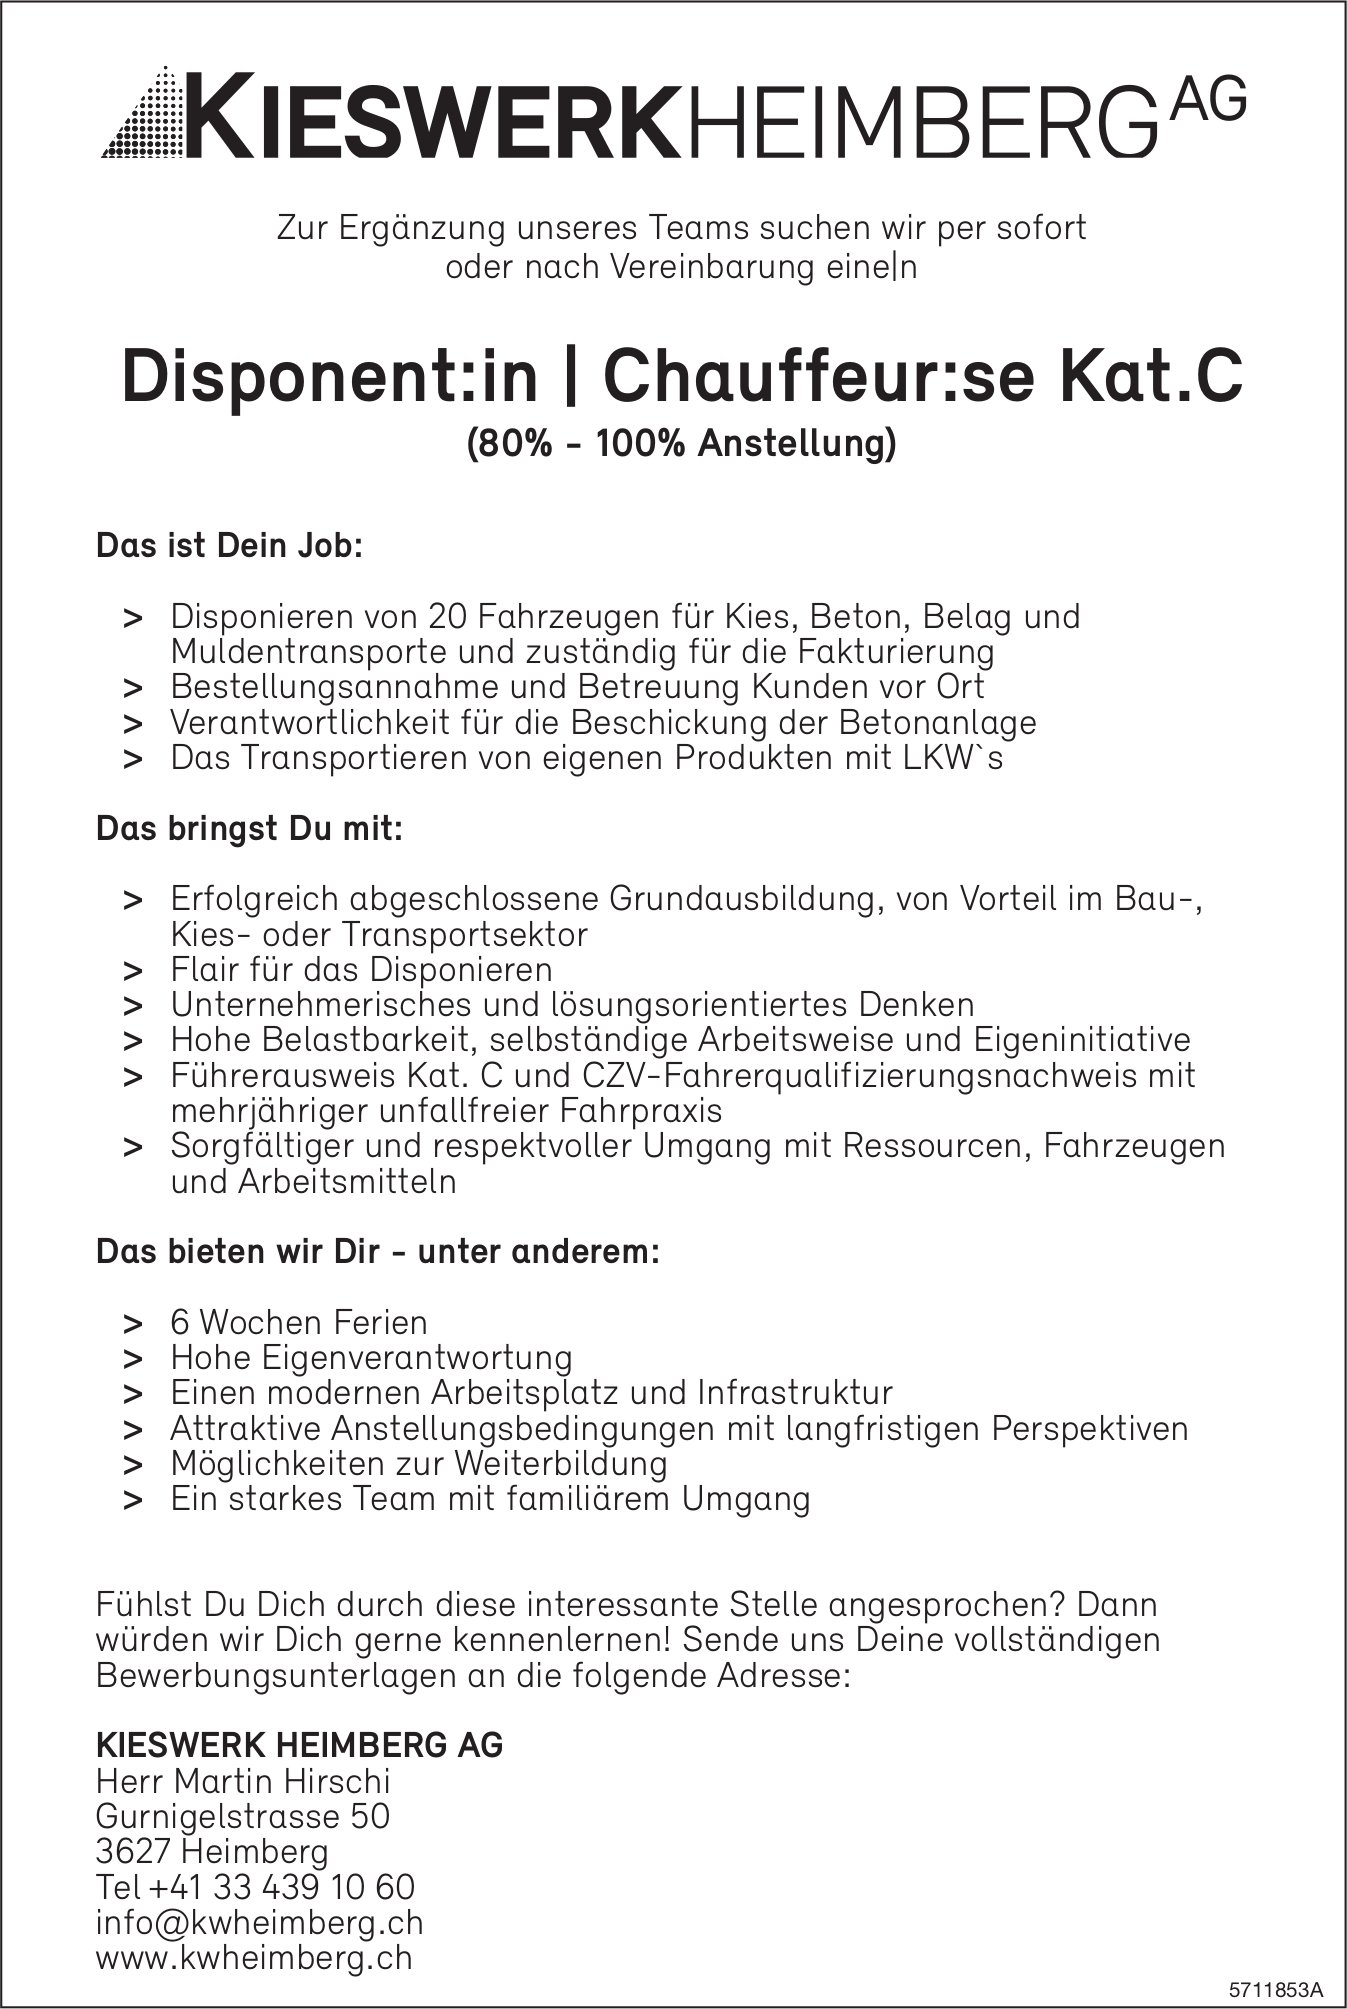 Disponent:in|Chauffeur:se Kat.C (80%-100% Anstellung), Kieswerk Heimberg AG, gesucht